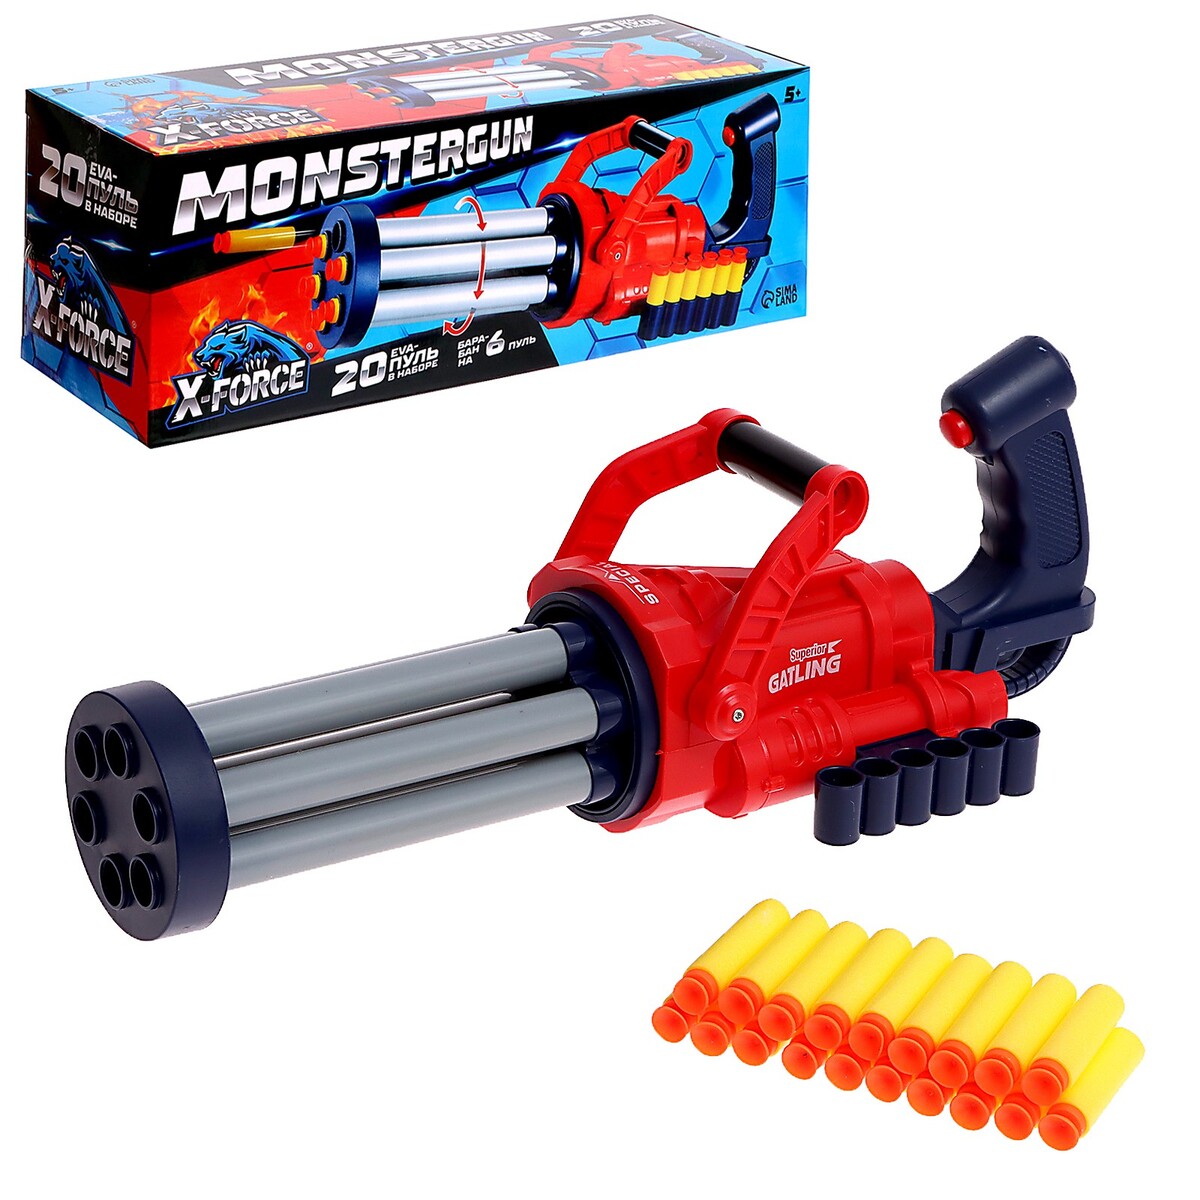 Бластер monstergun, 20 пуль, стреляет мягкими пулями X-FORCE